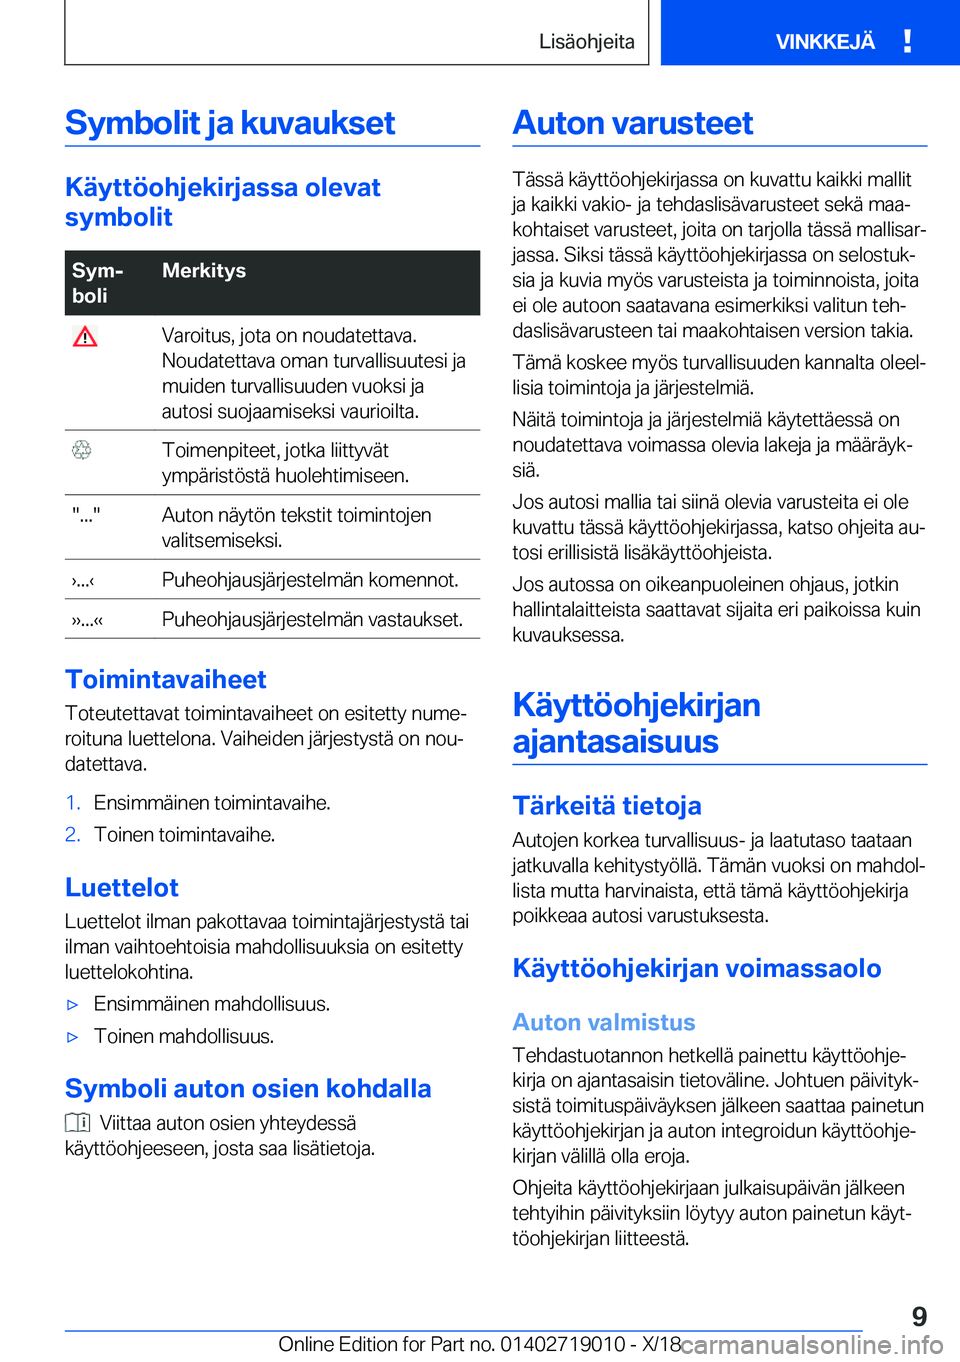 BMW Z4 2019  Omistajan Käsikirja (in Finnish) �S�y�m�b�o�l�i�t��j�a��k�u�v�a�u�k�s�e�t
�K�